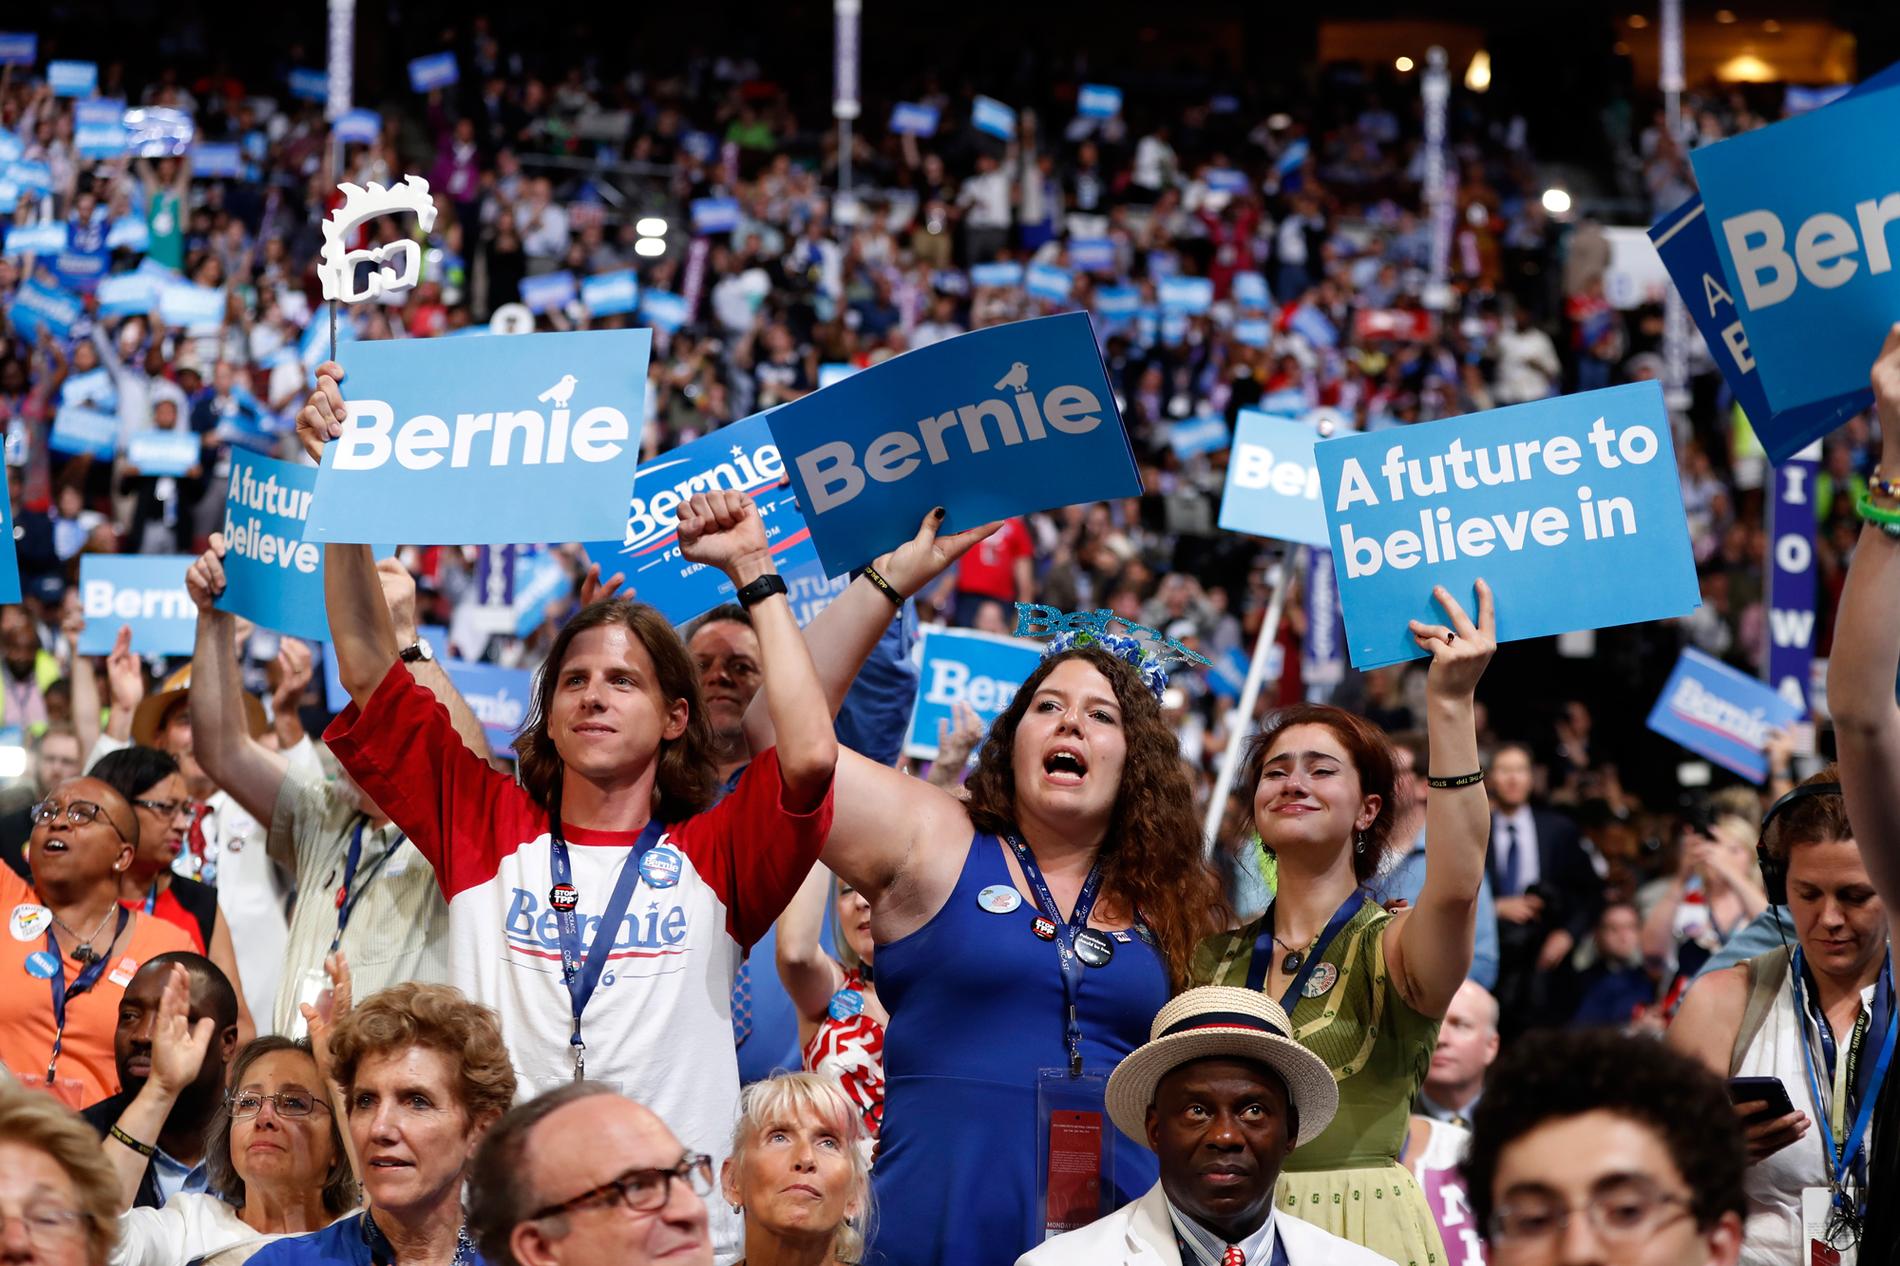 Vänsterns hopp Demokraten Bernie Sanders supportrar kommer tillbaka, hoppas Åsa Linderborg. Foto: AP